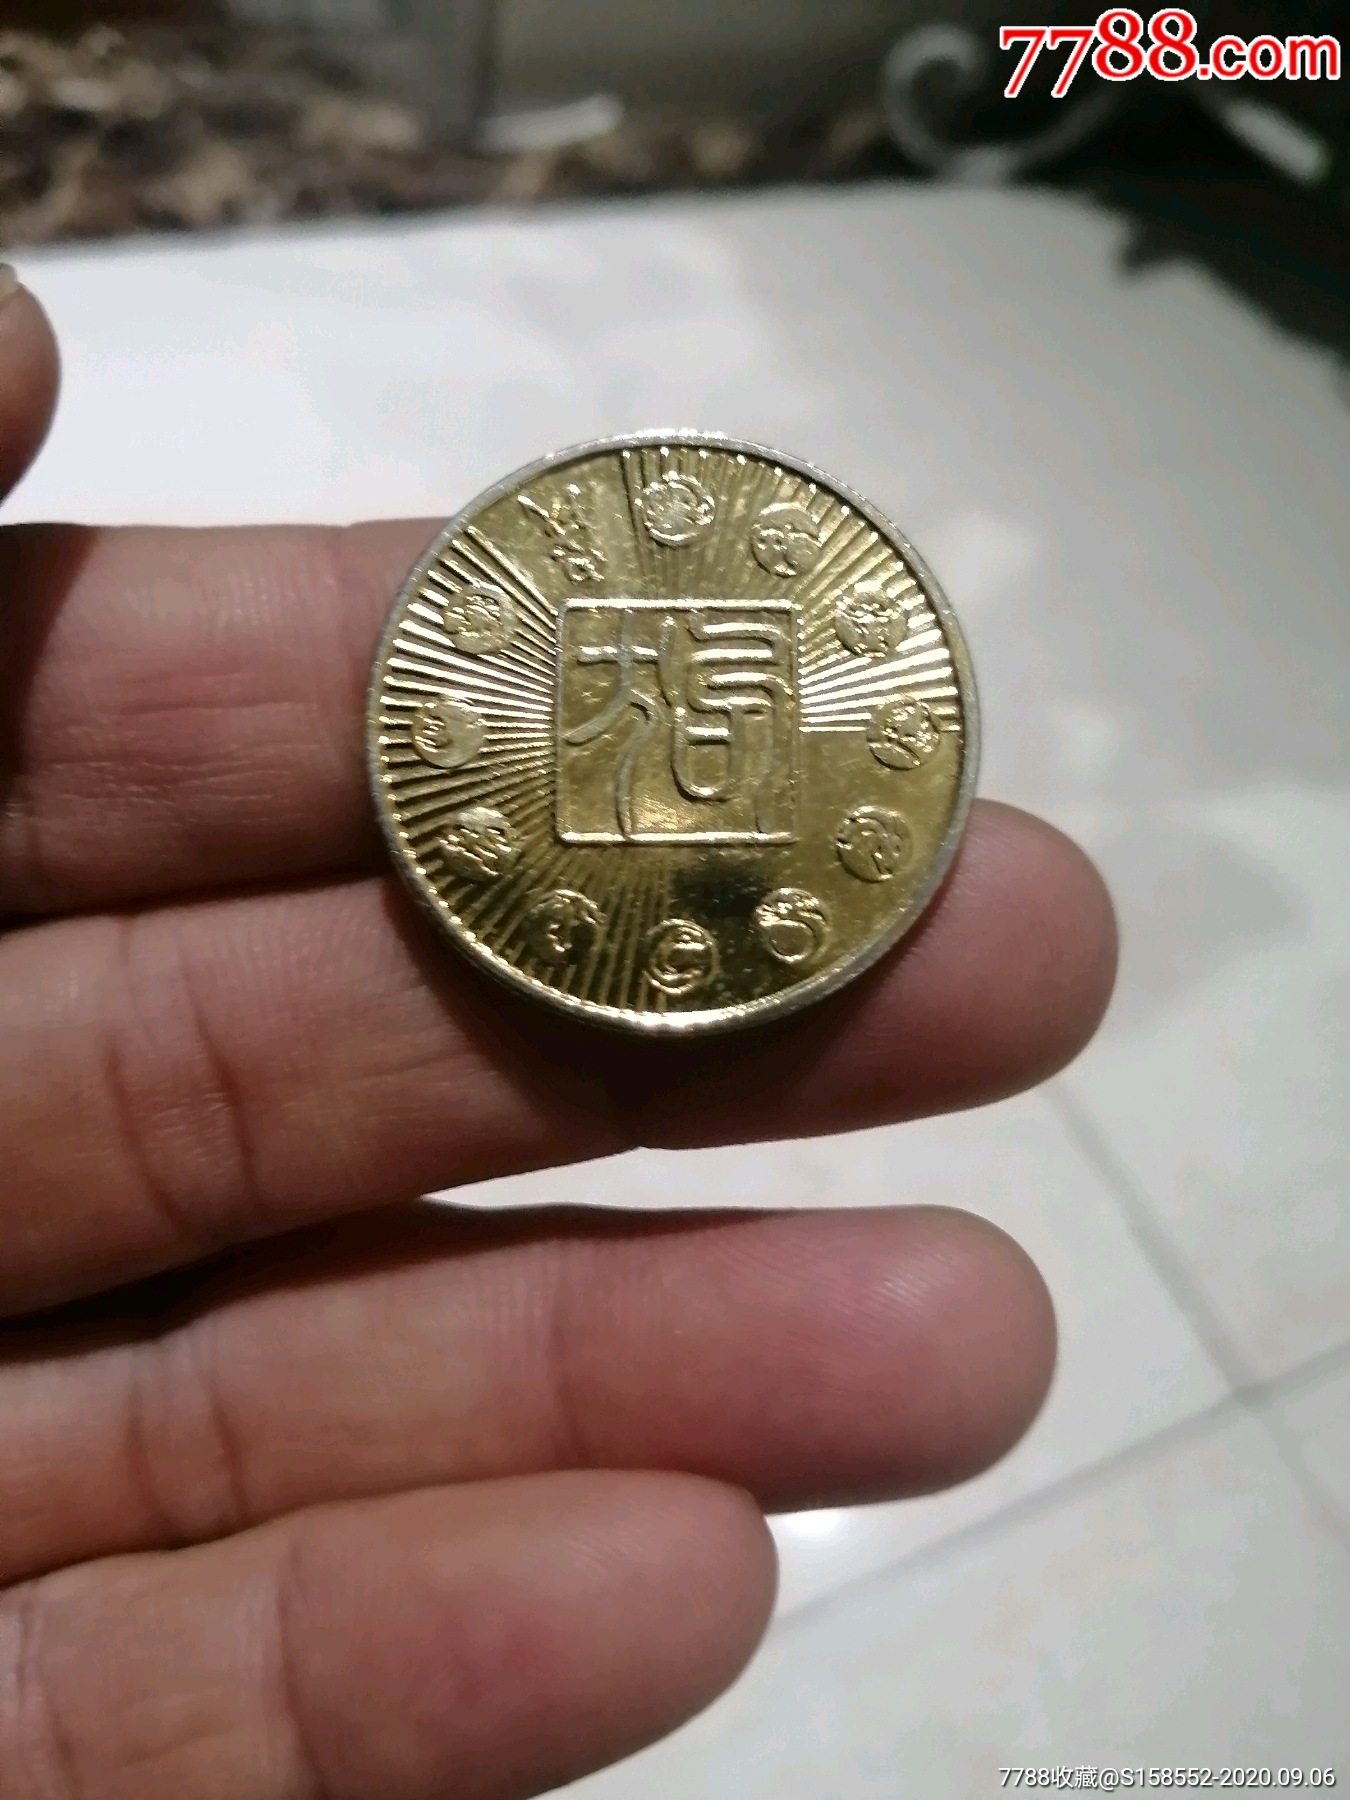 2006年上海造币厂丙戊狗年纪念币12枚